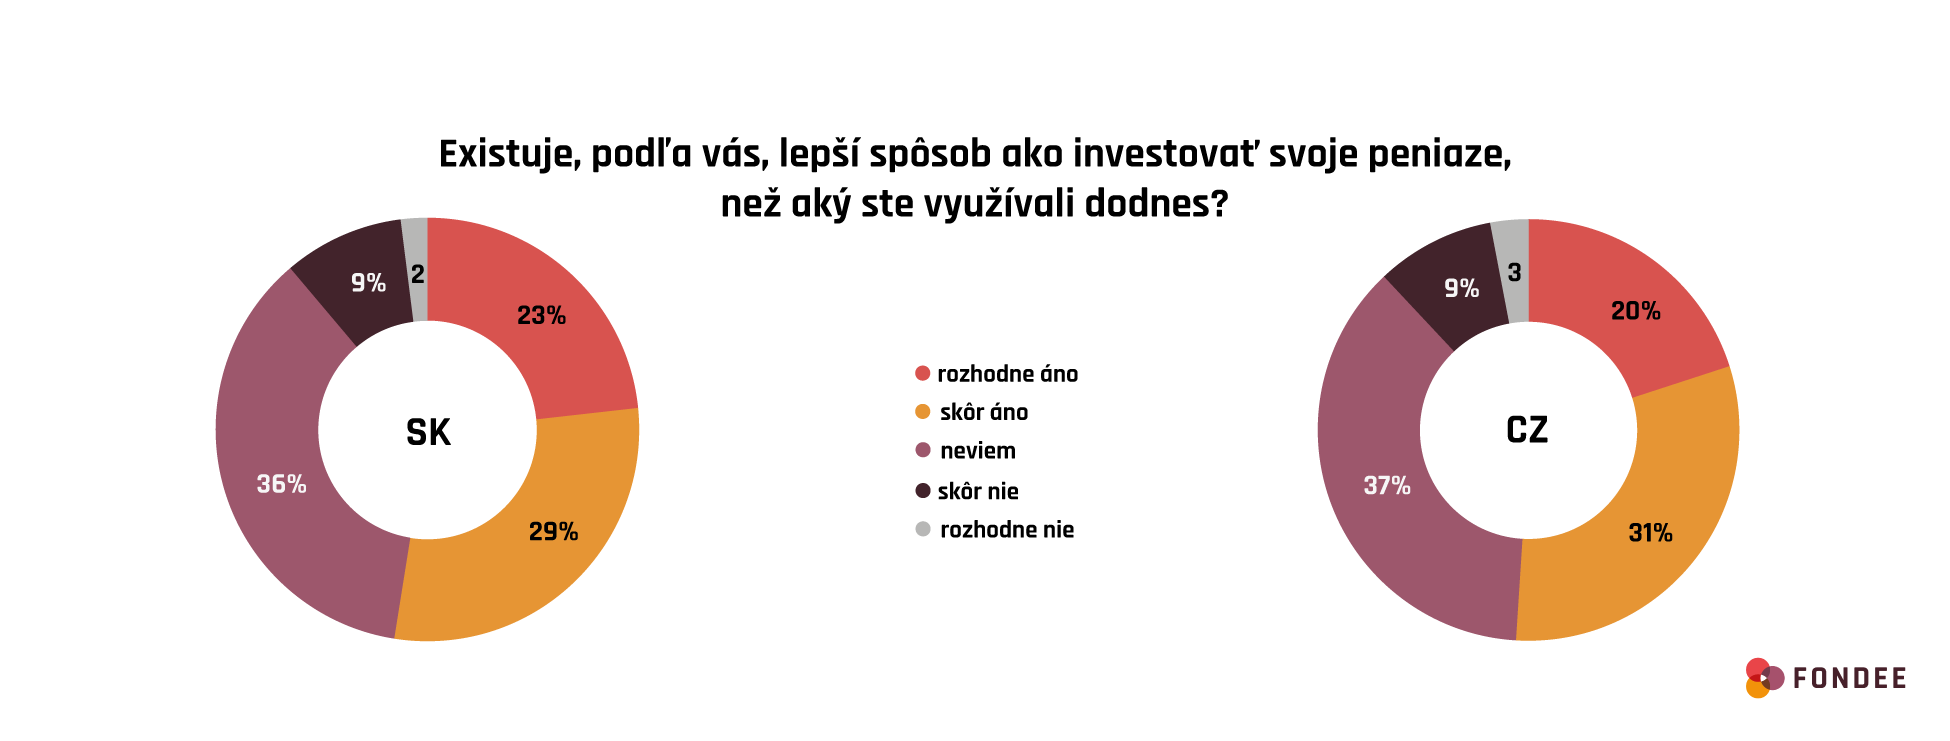 Ako investujú Slováci v porovnaní s Čechmi